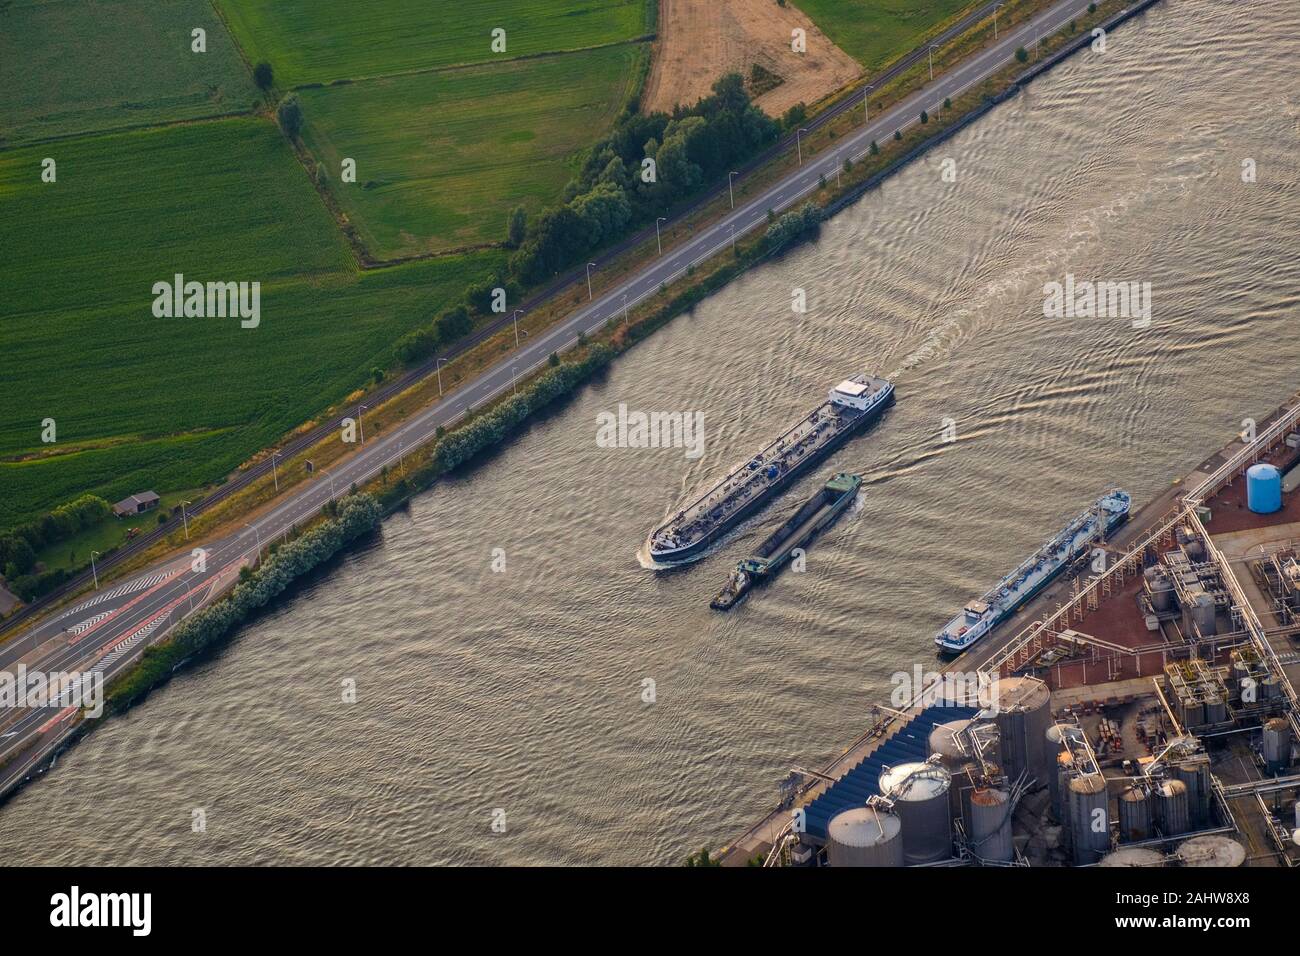 Am wichtigen Ghent-Terneuzen-Kanal kreuzen sich zwei Boote. Rechts davon befindet sich ein Stoff aus Industriechemikalien, einer der Branchen der Region. Stockfoto